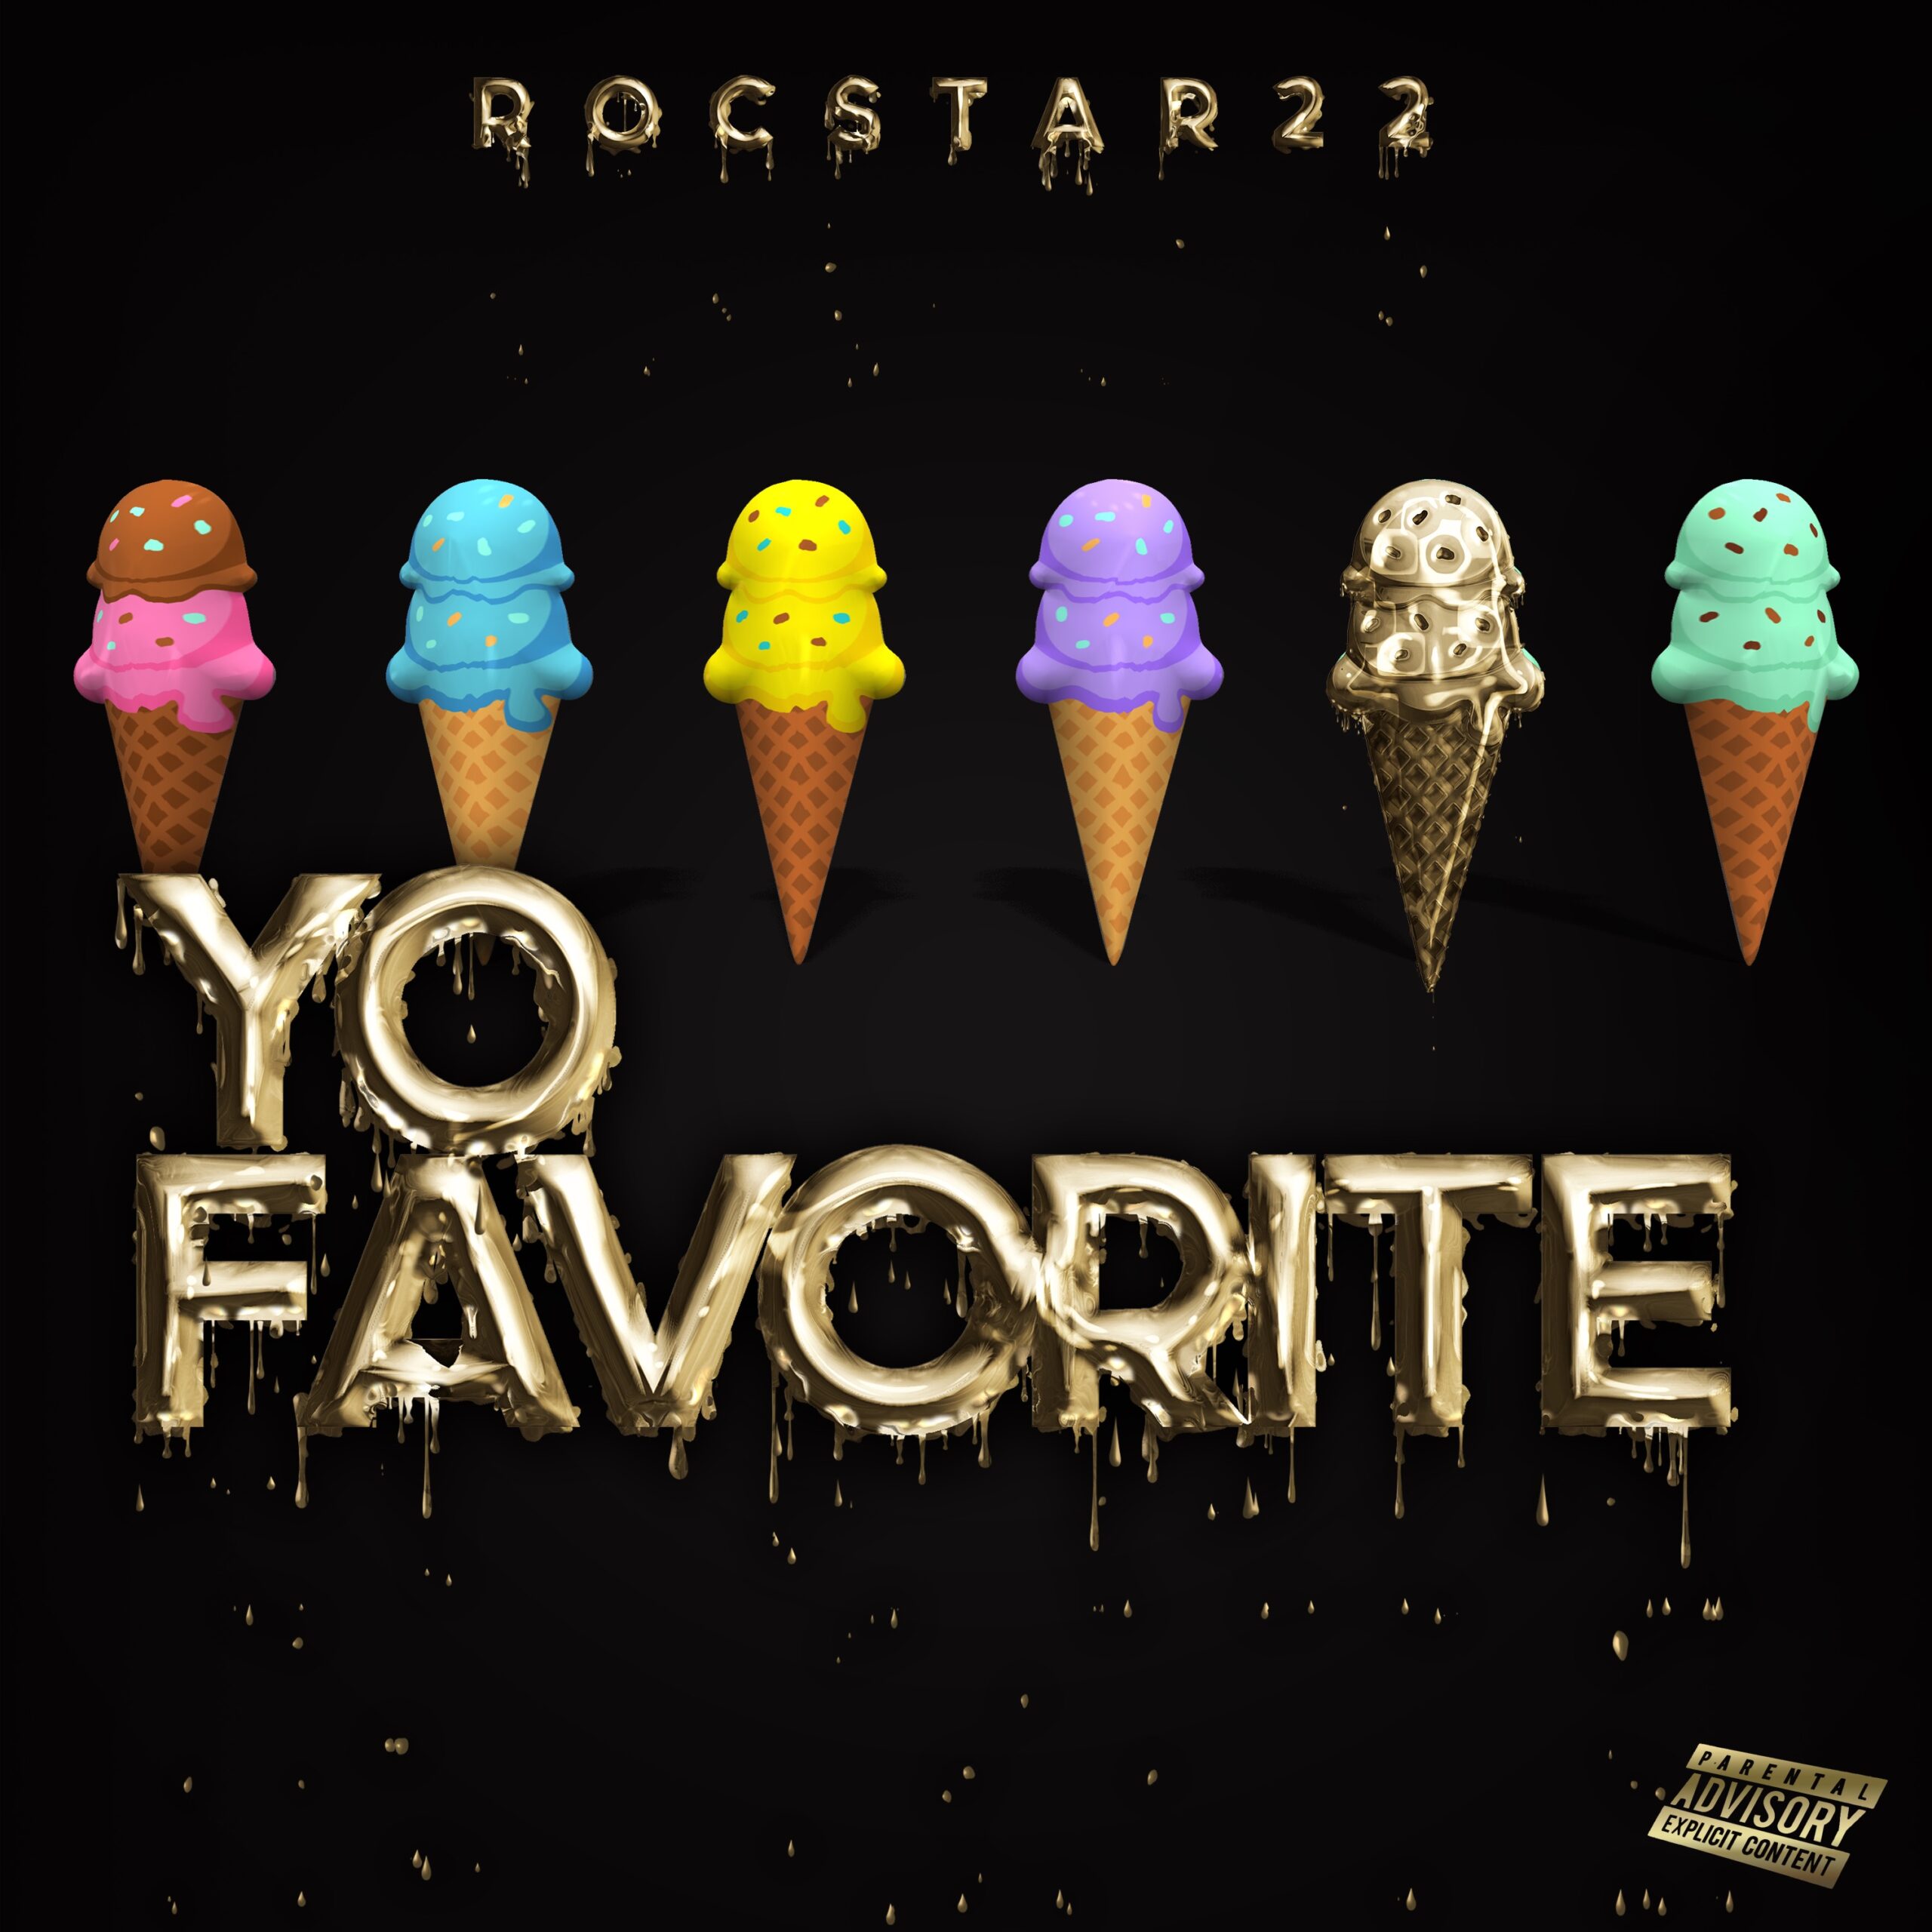 Rocstar22 – Yo Favorite Artwork